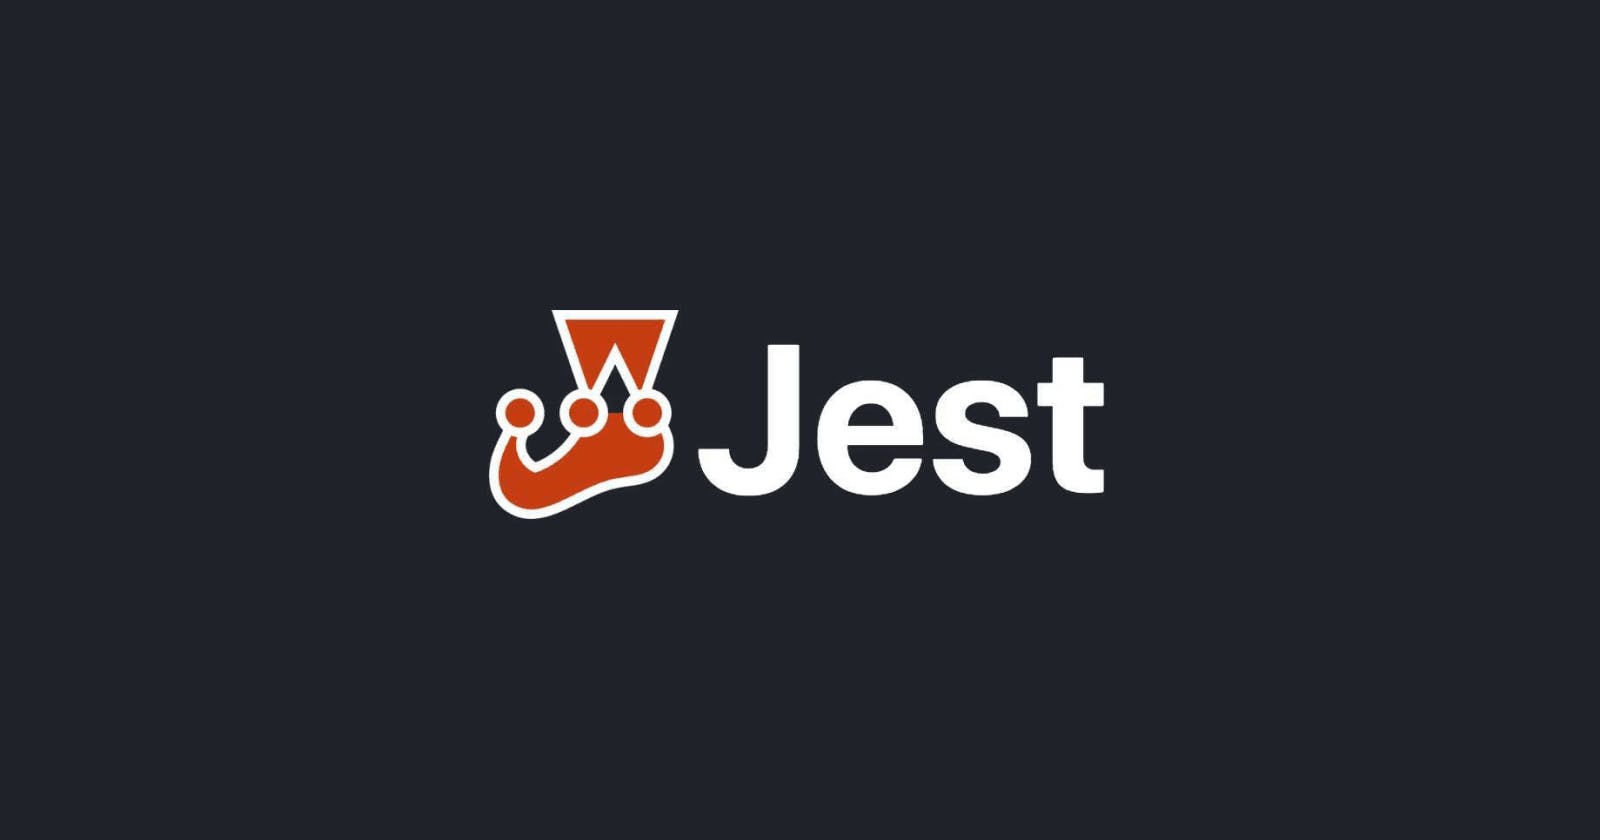 Testing with Jest